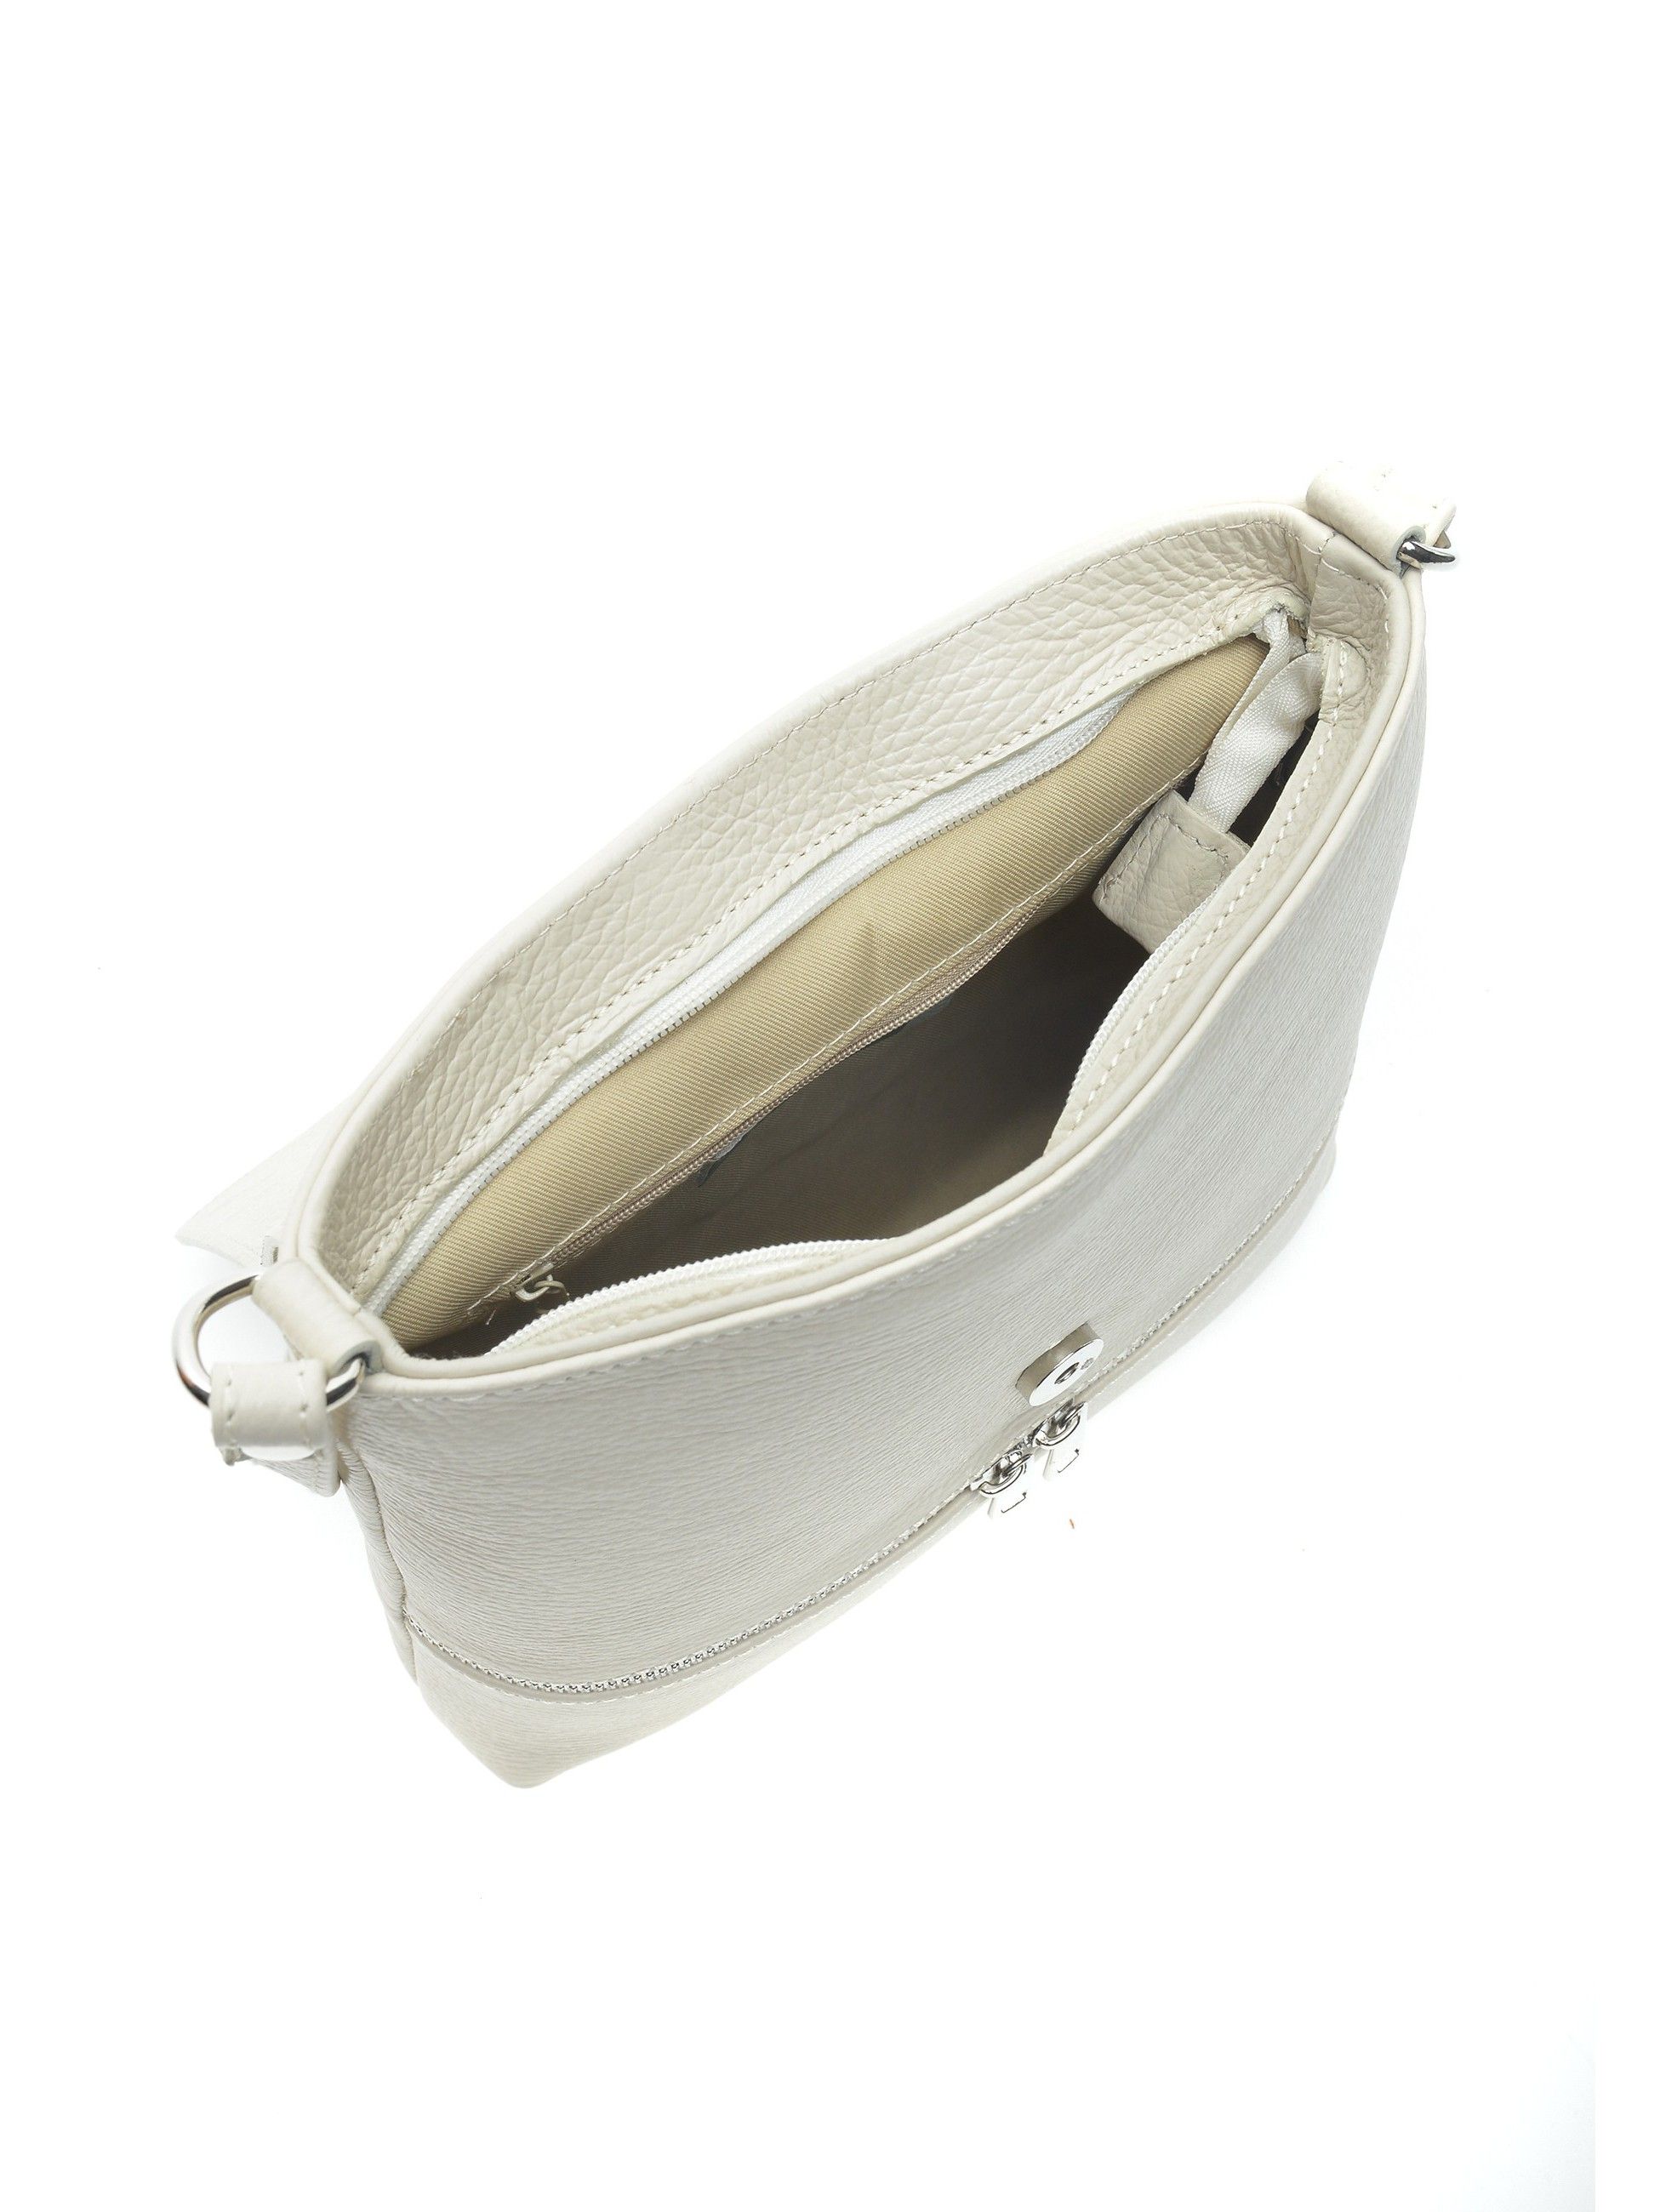 Shoulder Bag
100% cow leather
Flap over magnetic closure
Zipped bag
Inner zip pocket
Front zip pocket
Dimensions (L): 27x26x7 cm
Handle: /
Shoulder strap:120 cm (adjustable)